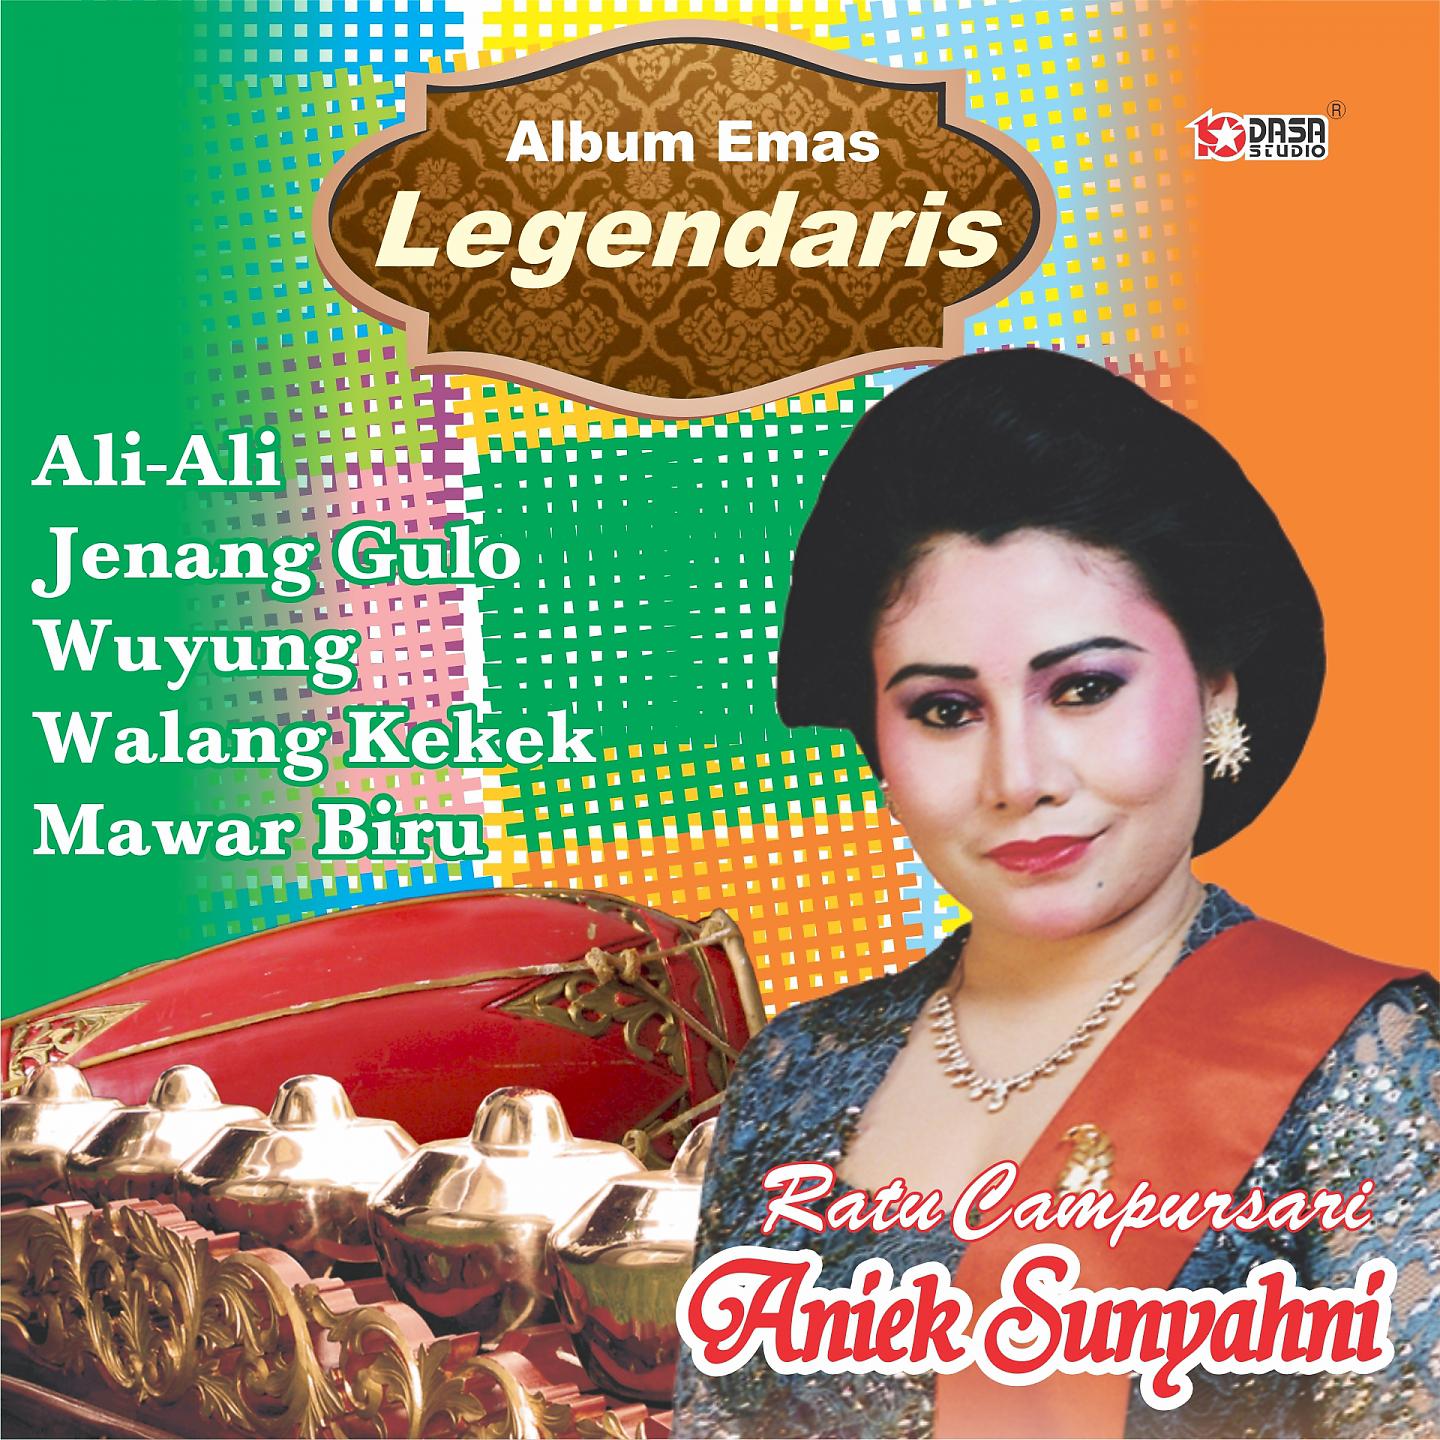 Постер альбома Emas Legendaris Aniek Sunyahni, Vol. 2